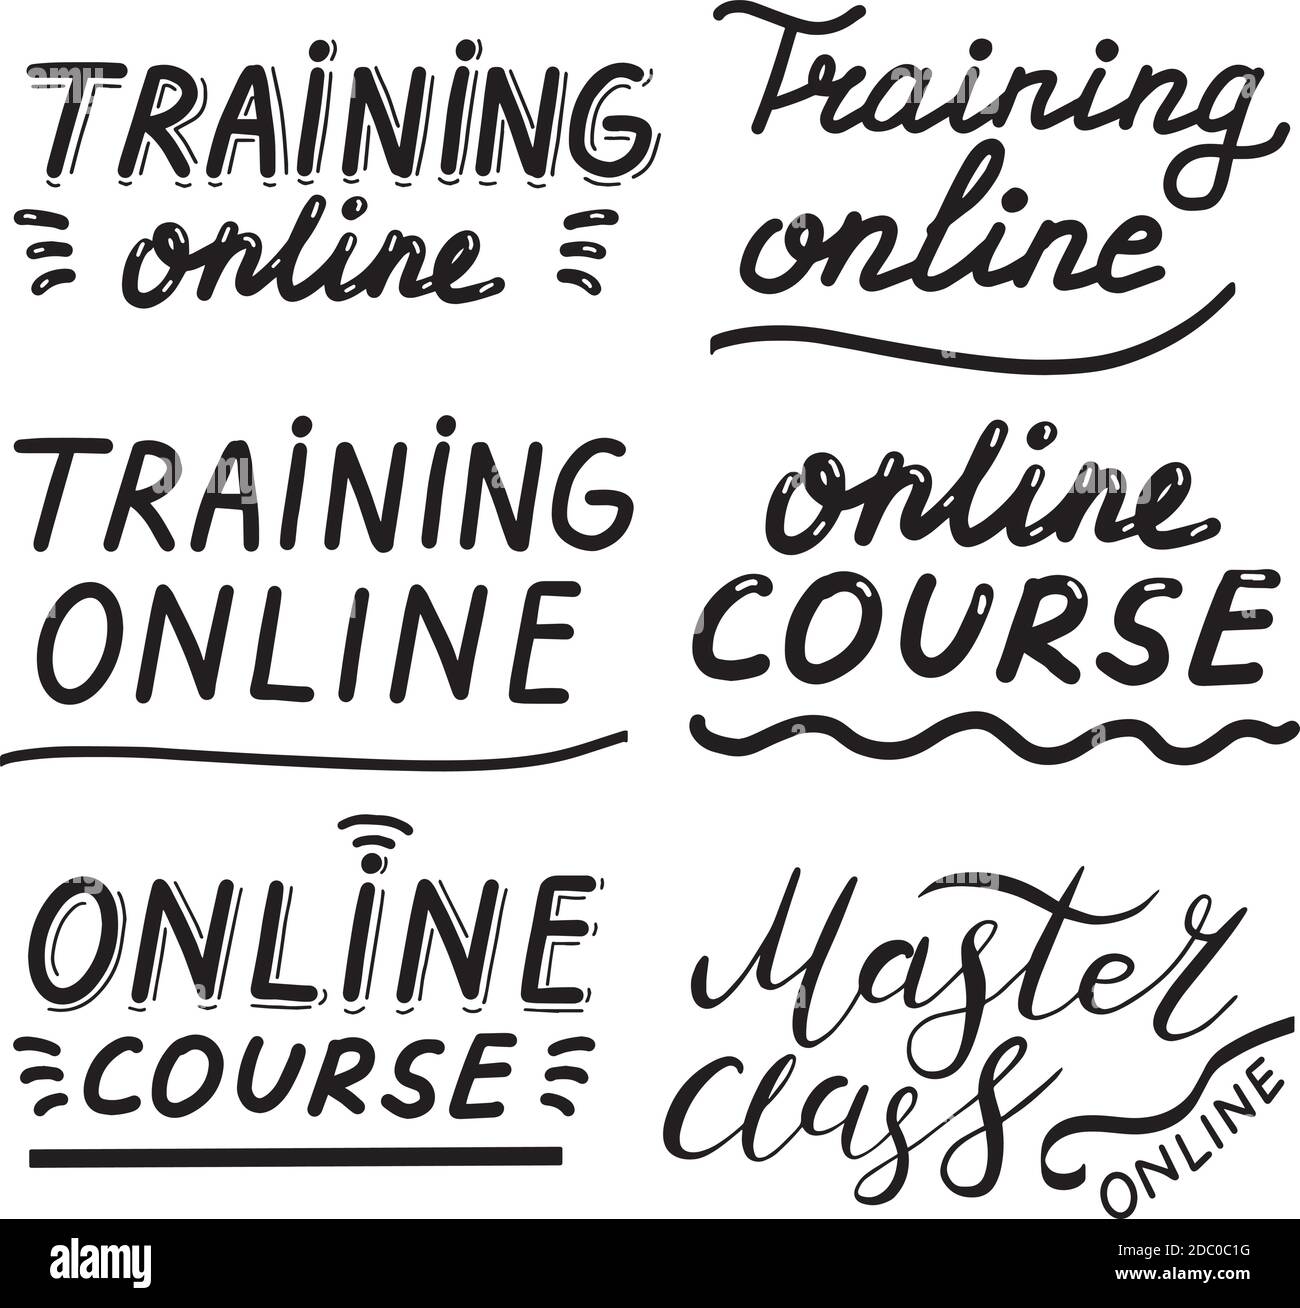 Formazione online, corso, master class, calligrafia disegnata a mano illustrazione. Vector eps pennello trendy isolato su sfondo bianco. Illustrazione Vettoriale